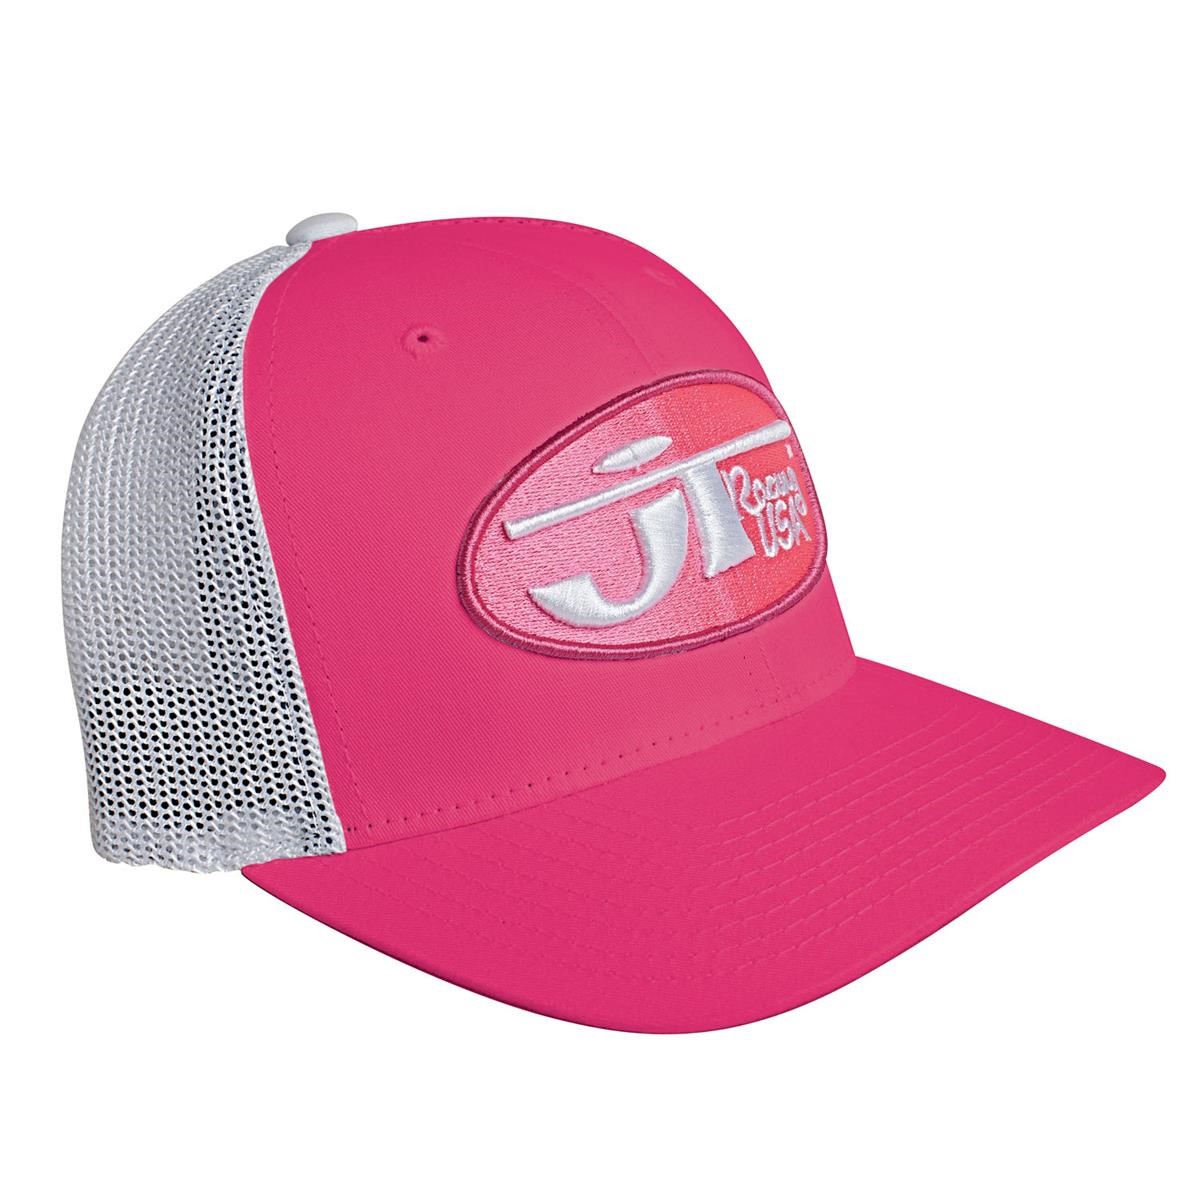 Freizeit/Streetwear Bekleidung-Beanies/Mützen/Caps - JT Racing USA Trucker Cap/Mütze Oval Pink/Pink